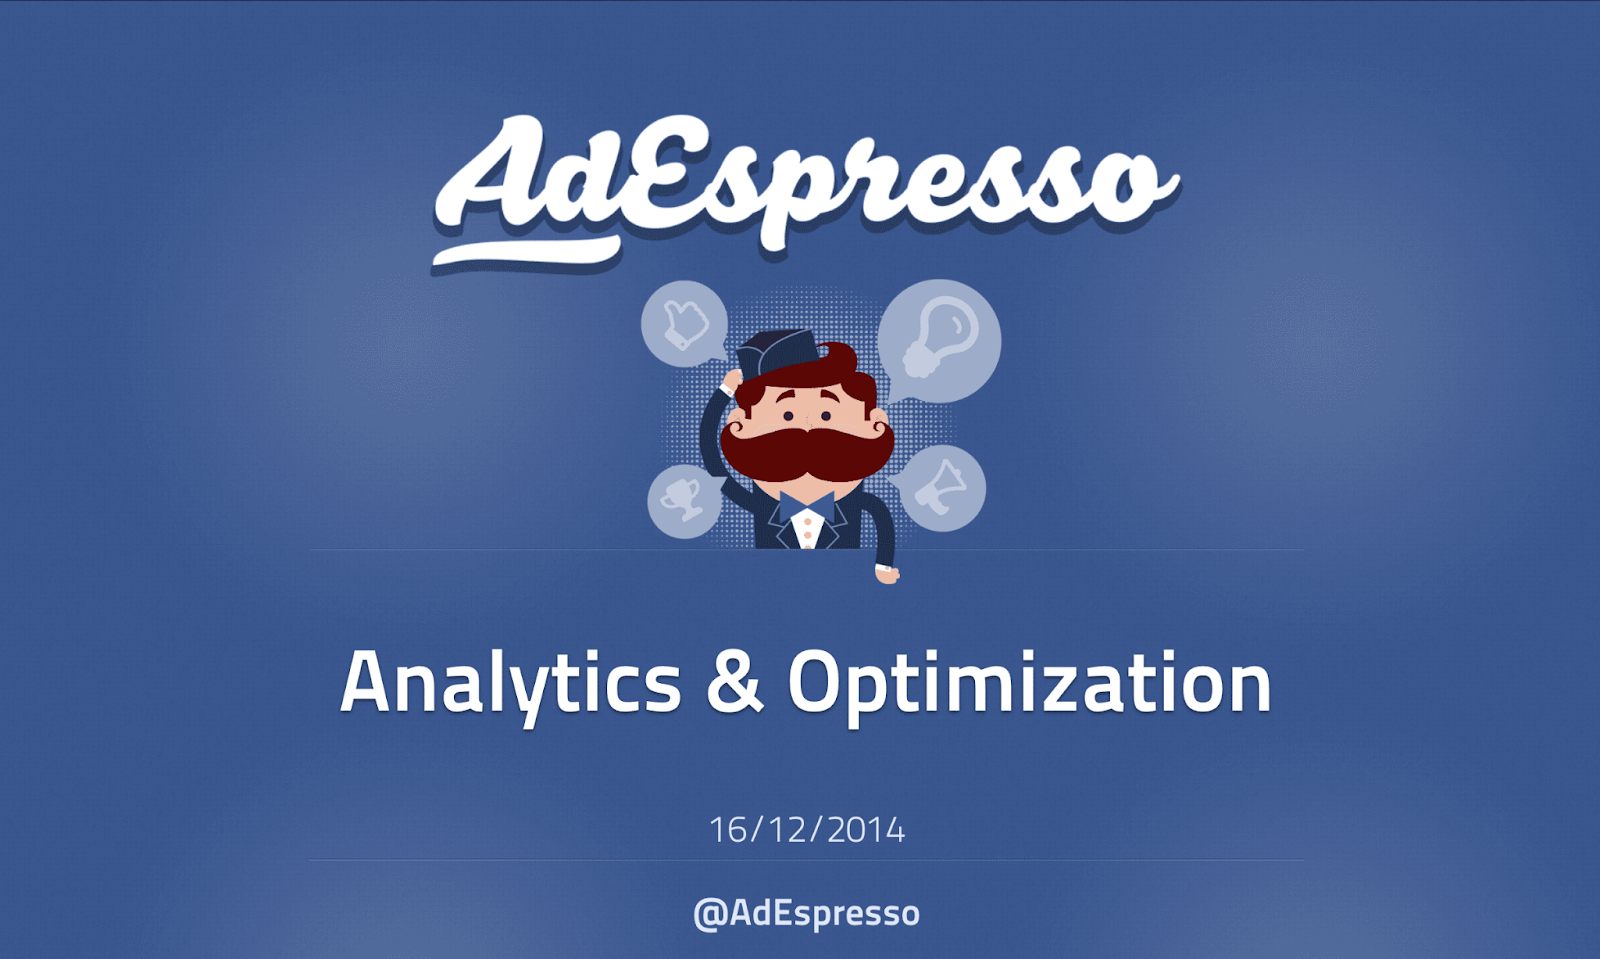 Sử dụng Facebook Ads hiệu quả và dễ dàng hơn với công cụ hỗ trợ AdEspresso